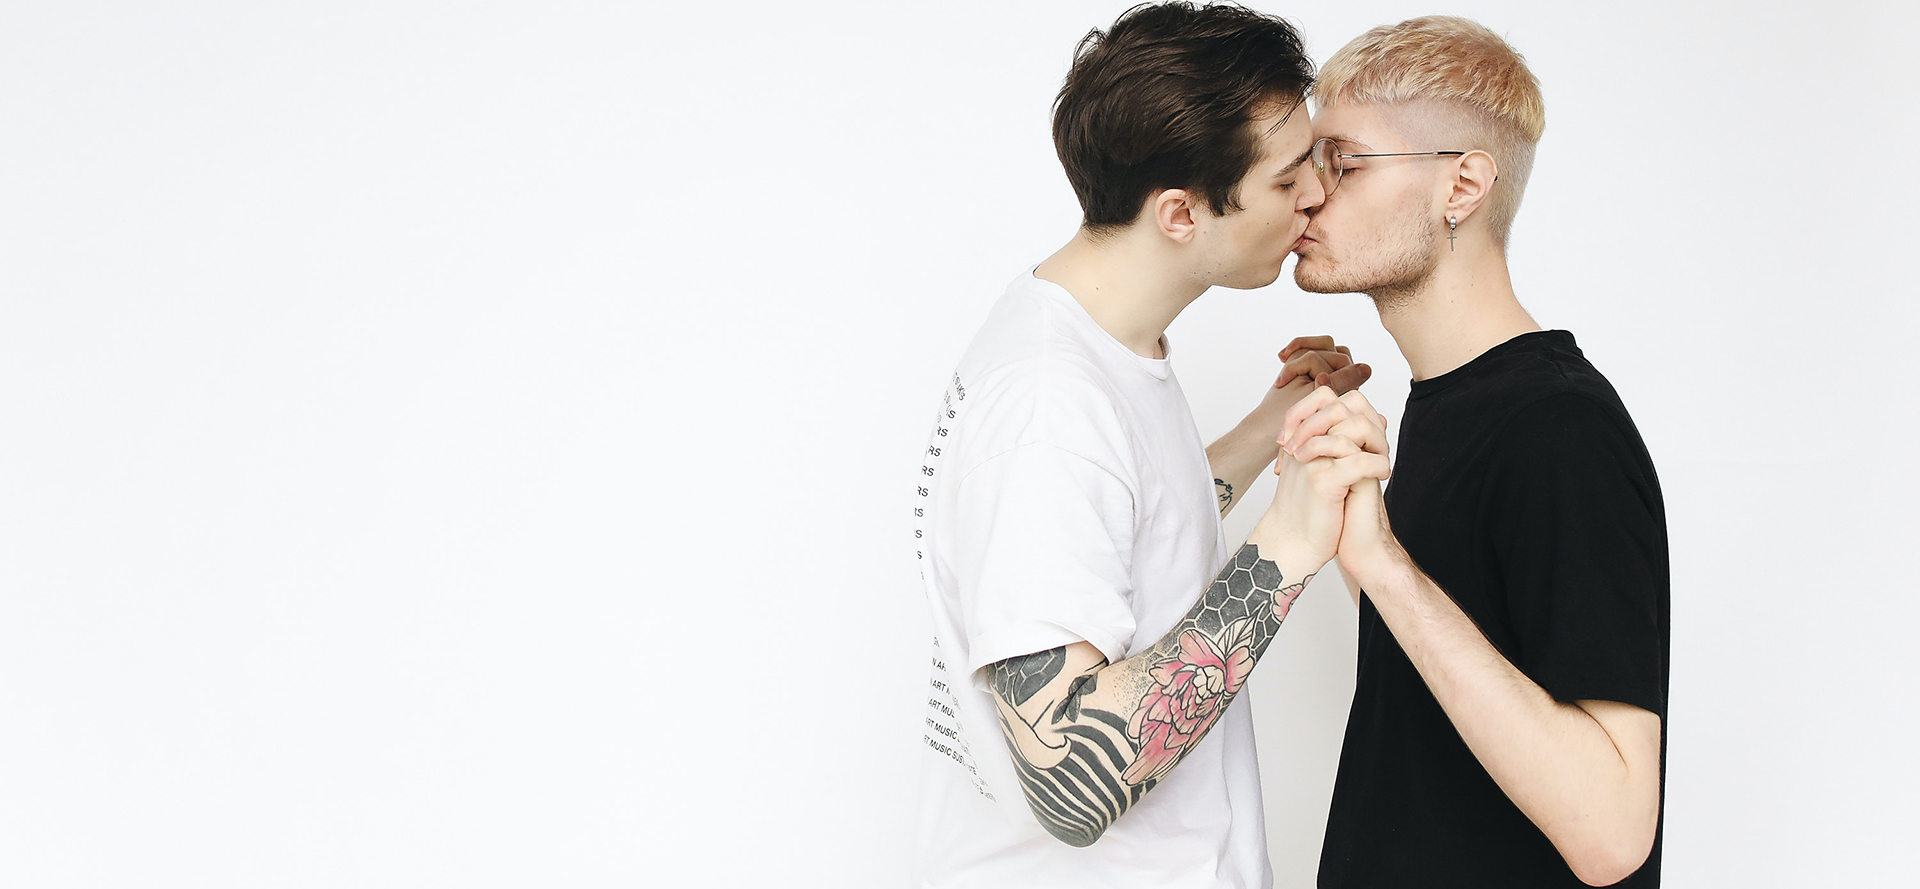 Ett bisexuellt par kysser varandra.